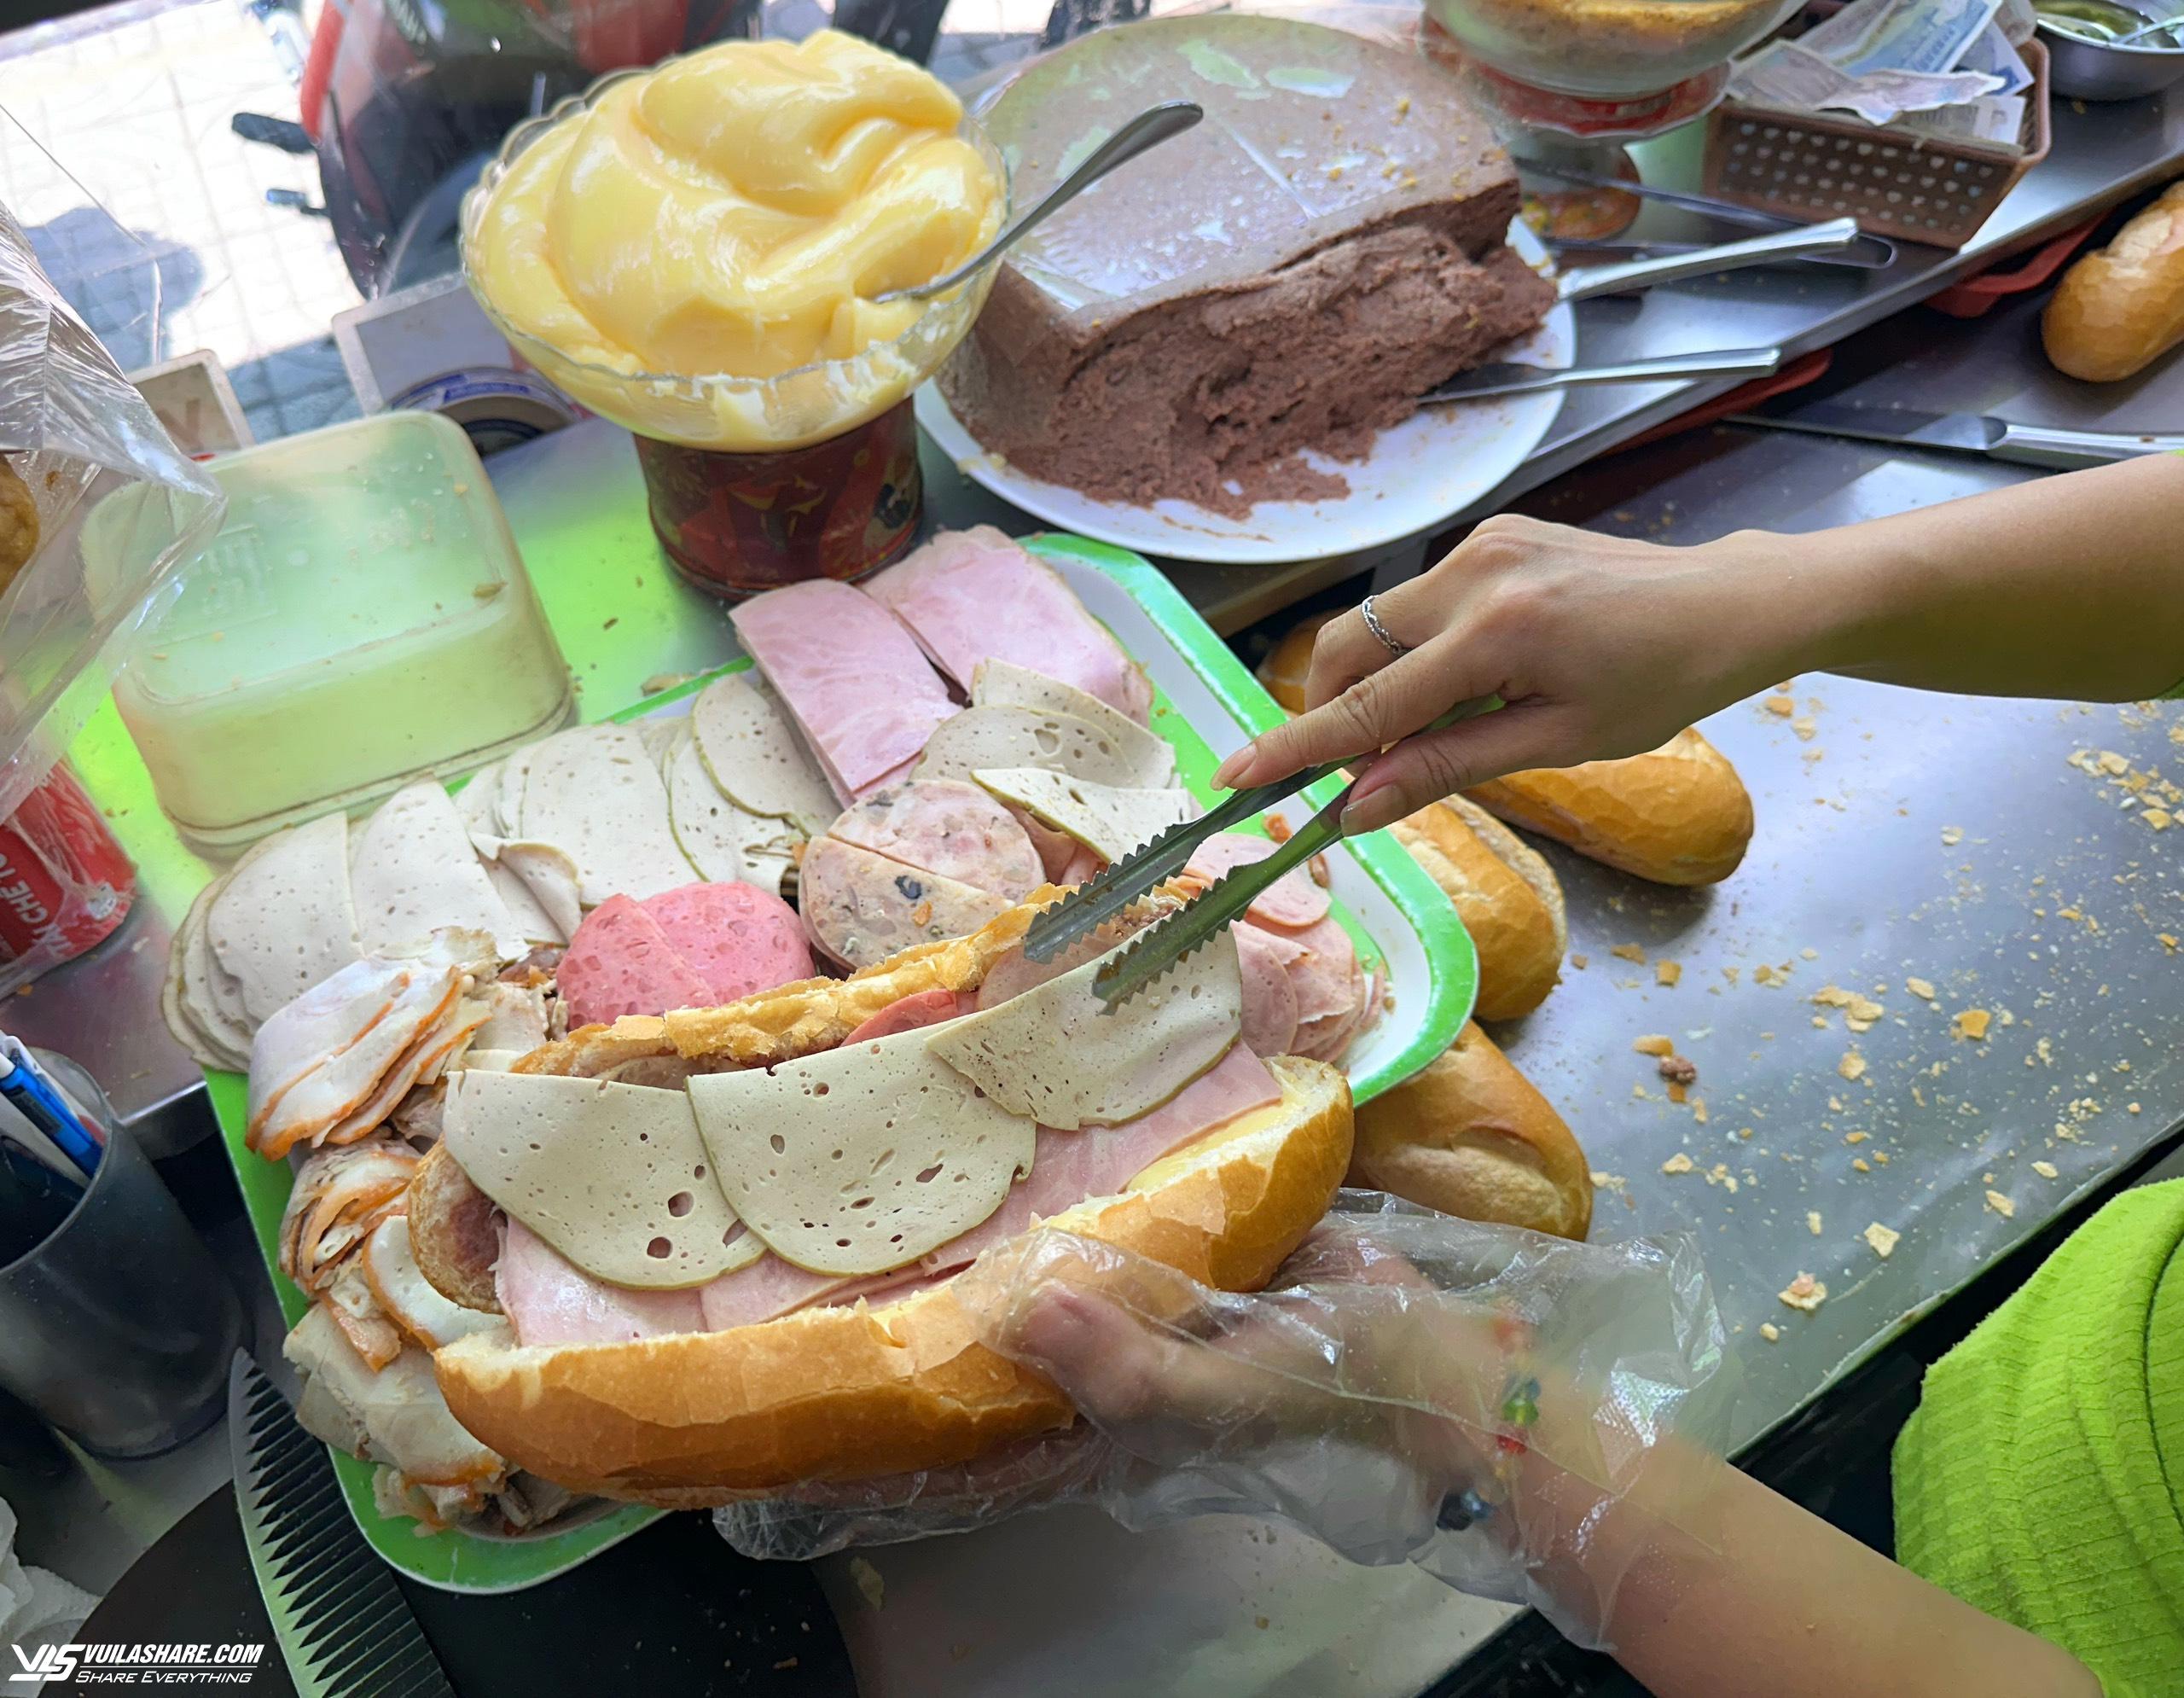 Hôm nay Michelin Guide công bố danh sách quán ăn ở Việt Nam: Bánh mì liệu có đánh rớt như 2023?- Ảnh 7.